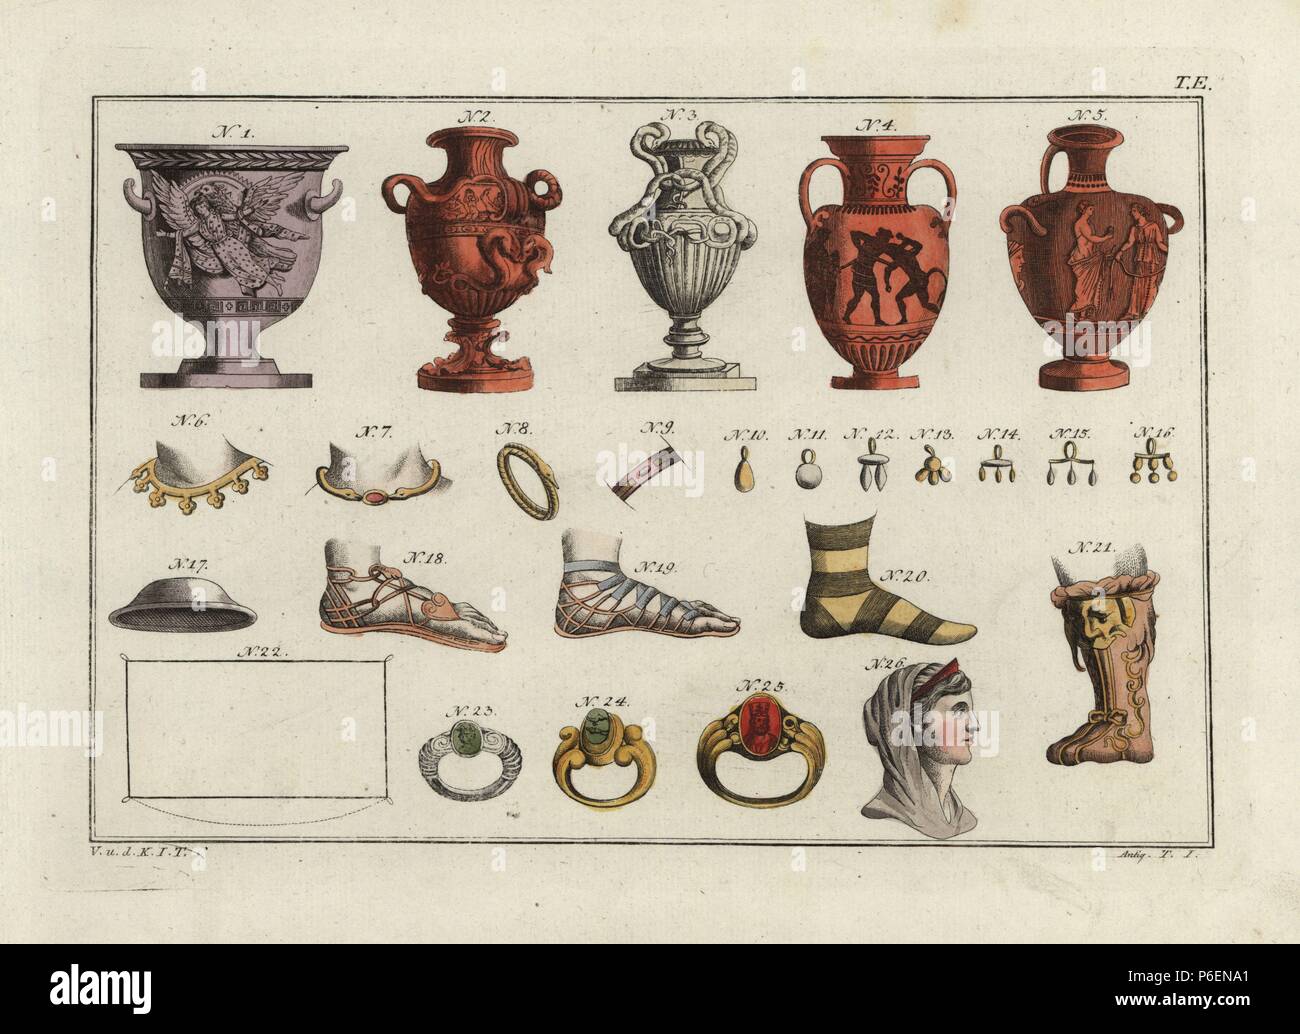 Vasi greci (1-5), le donne collane (6,7), bracciali (8, 9), e orecchini (10-16); sandali (18-19), scarpe (20-21), il pallio (22), gli anelli (23-25) ed il busto di regina greca (26). Thessalian hat (17). Handcolored incisione su rame da Robert von Spalart 'quadro storico dei costumi del popolo principale dell'antichità e del Medioevo", Metz, 1810. Foto Stock